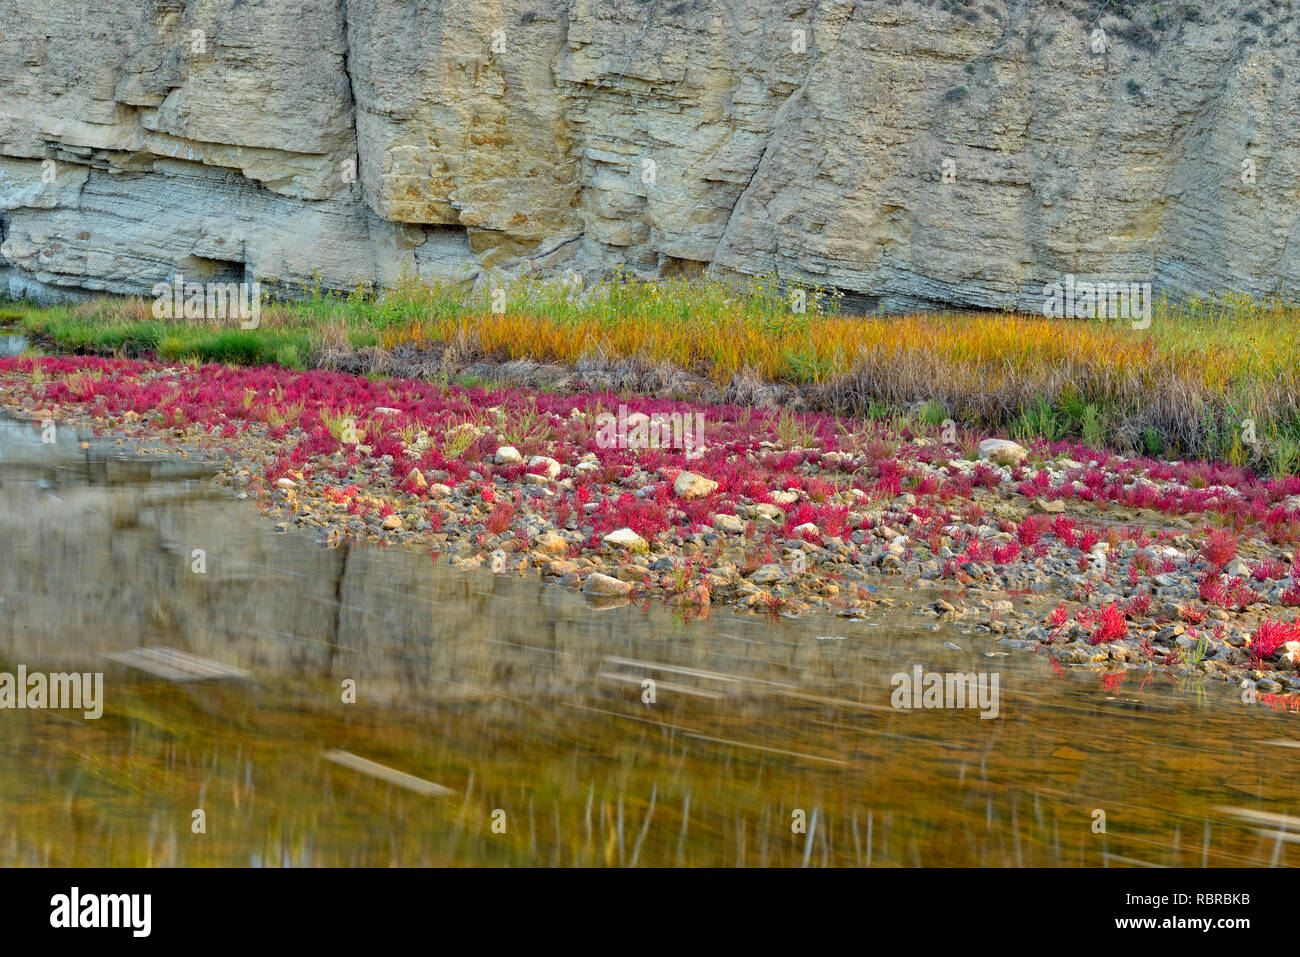 Vegetación tolerantes a la sal (rojo samphire) que crecen a lo largo de la orilla del río Salt, Wood Buffalo National Park, Alberta, Canadá Foto de stock